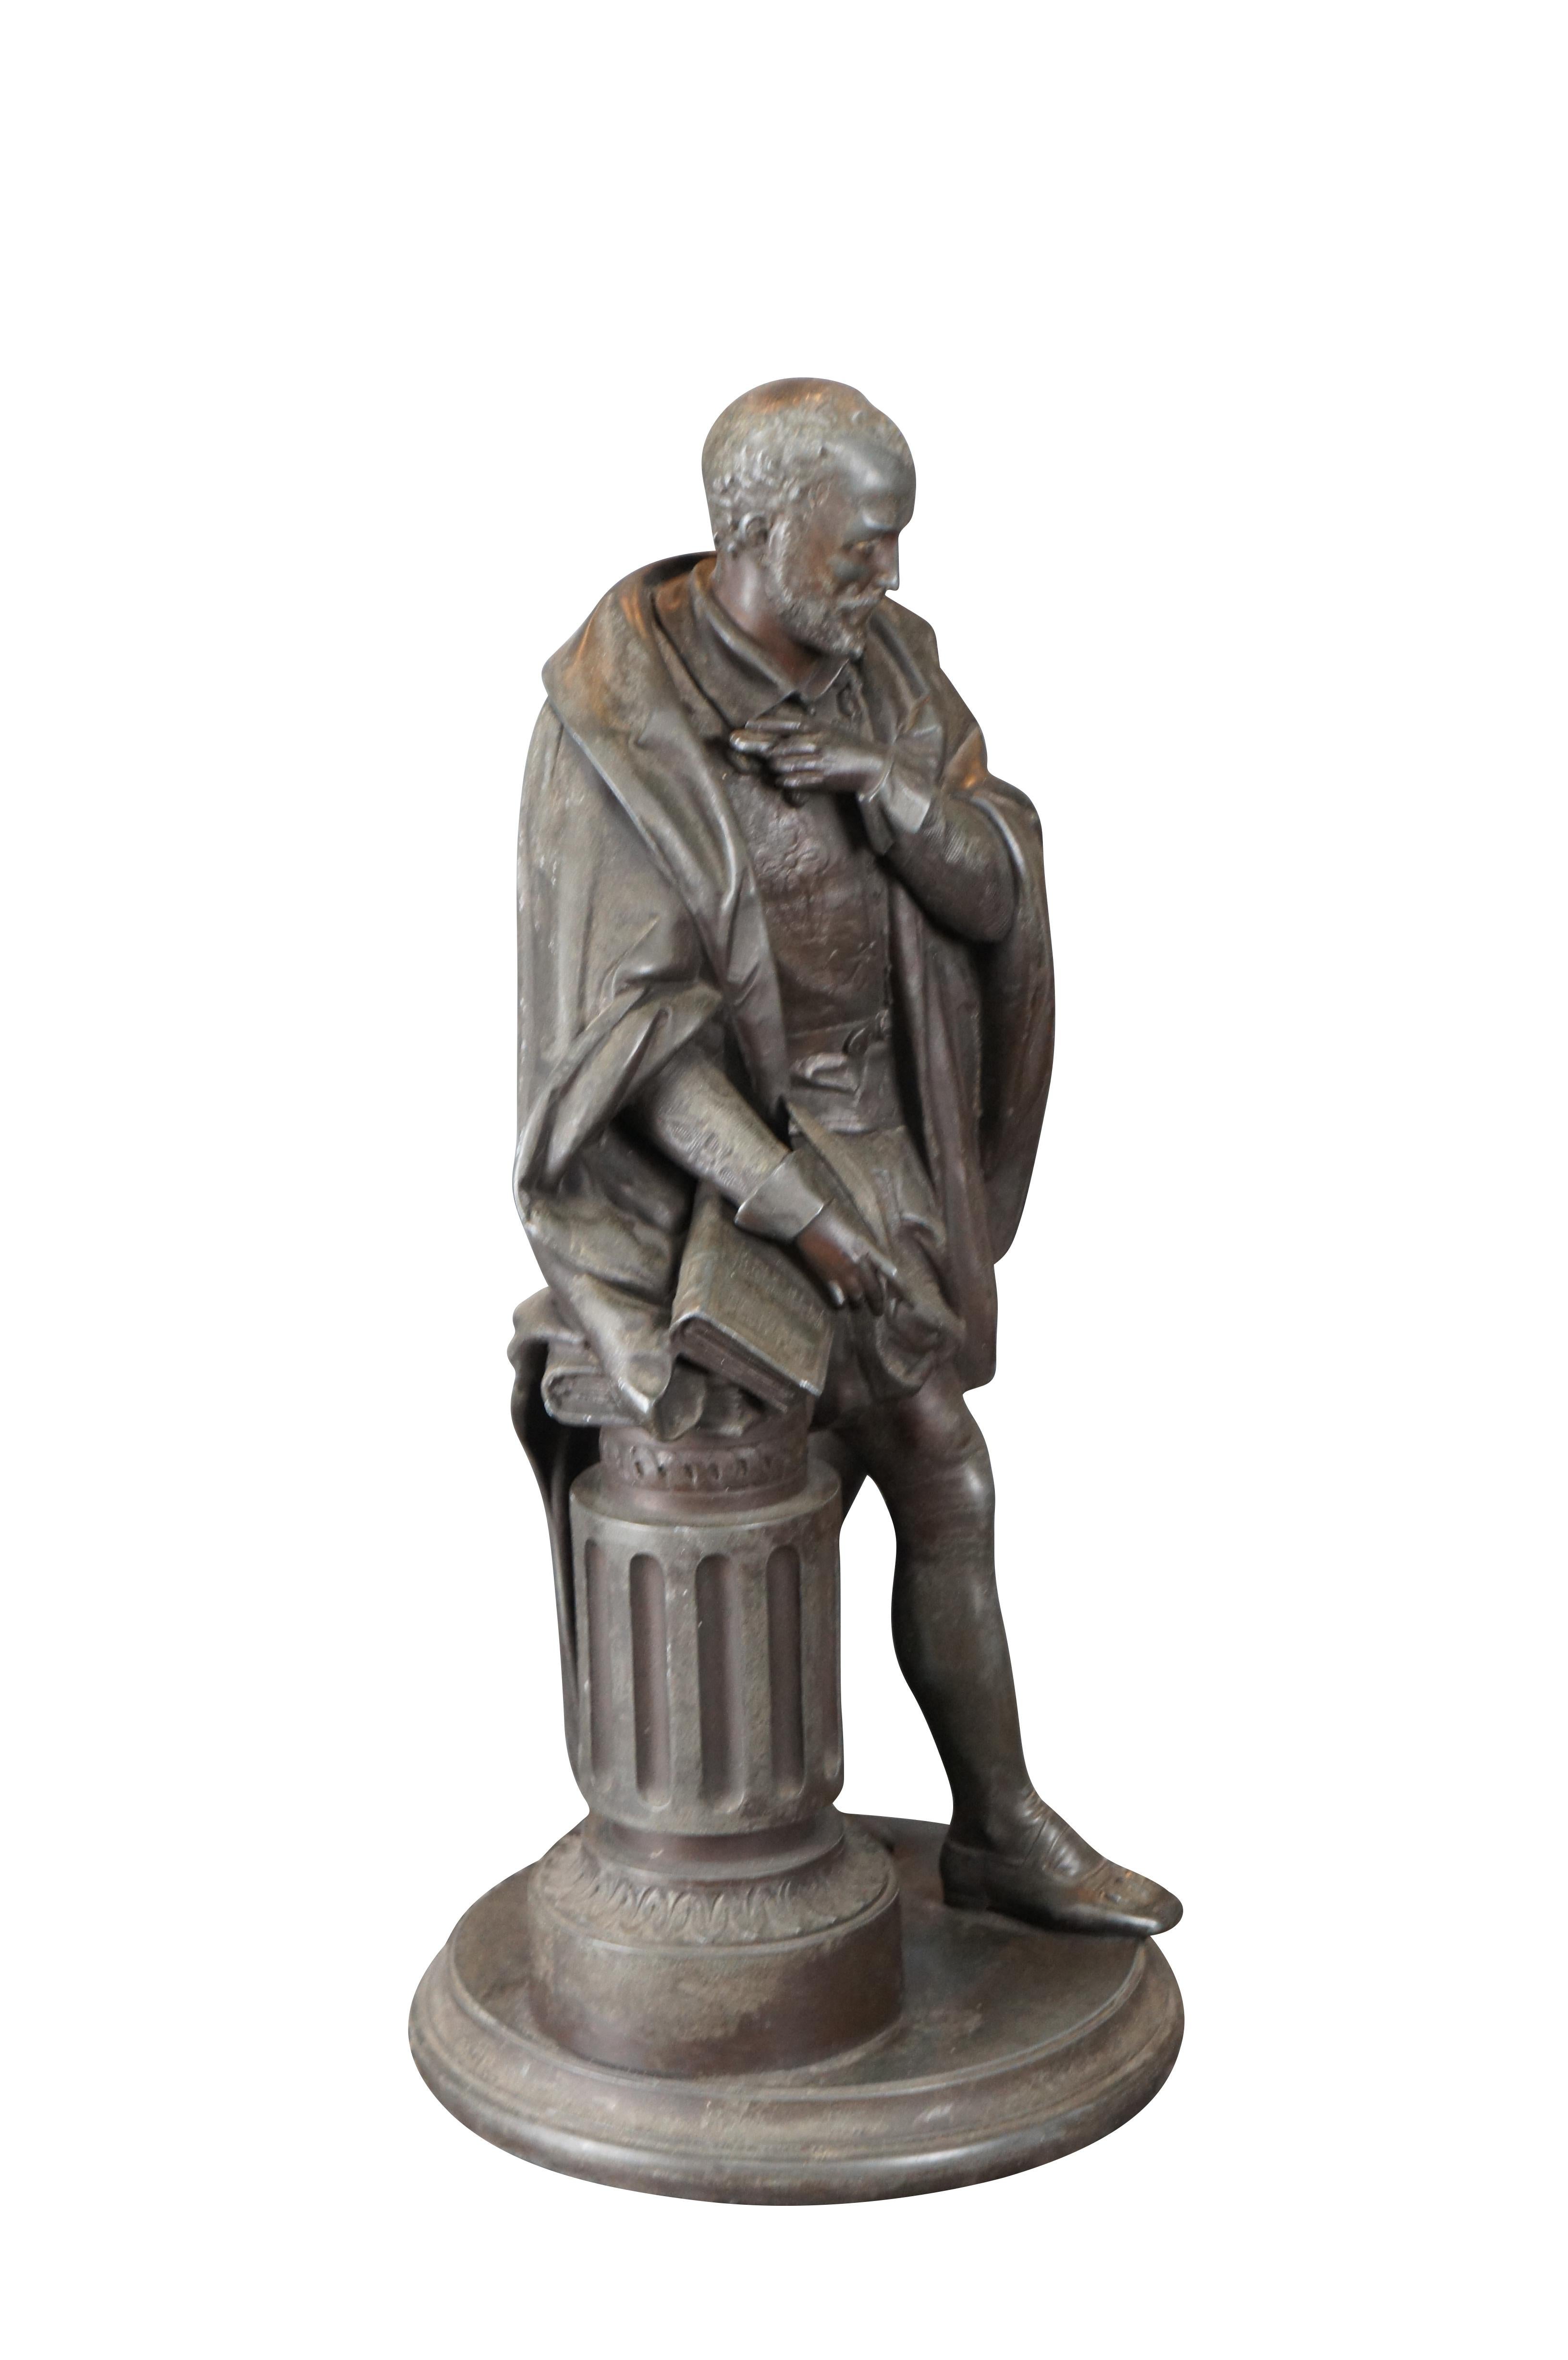 20th Century Antique Spelter William Shakespeare Standing Sculpture Statue Philosopher 19